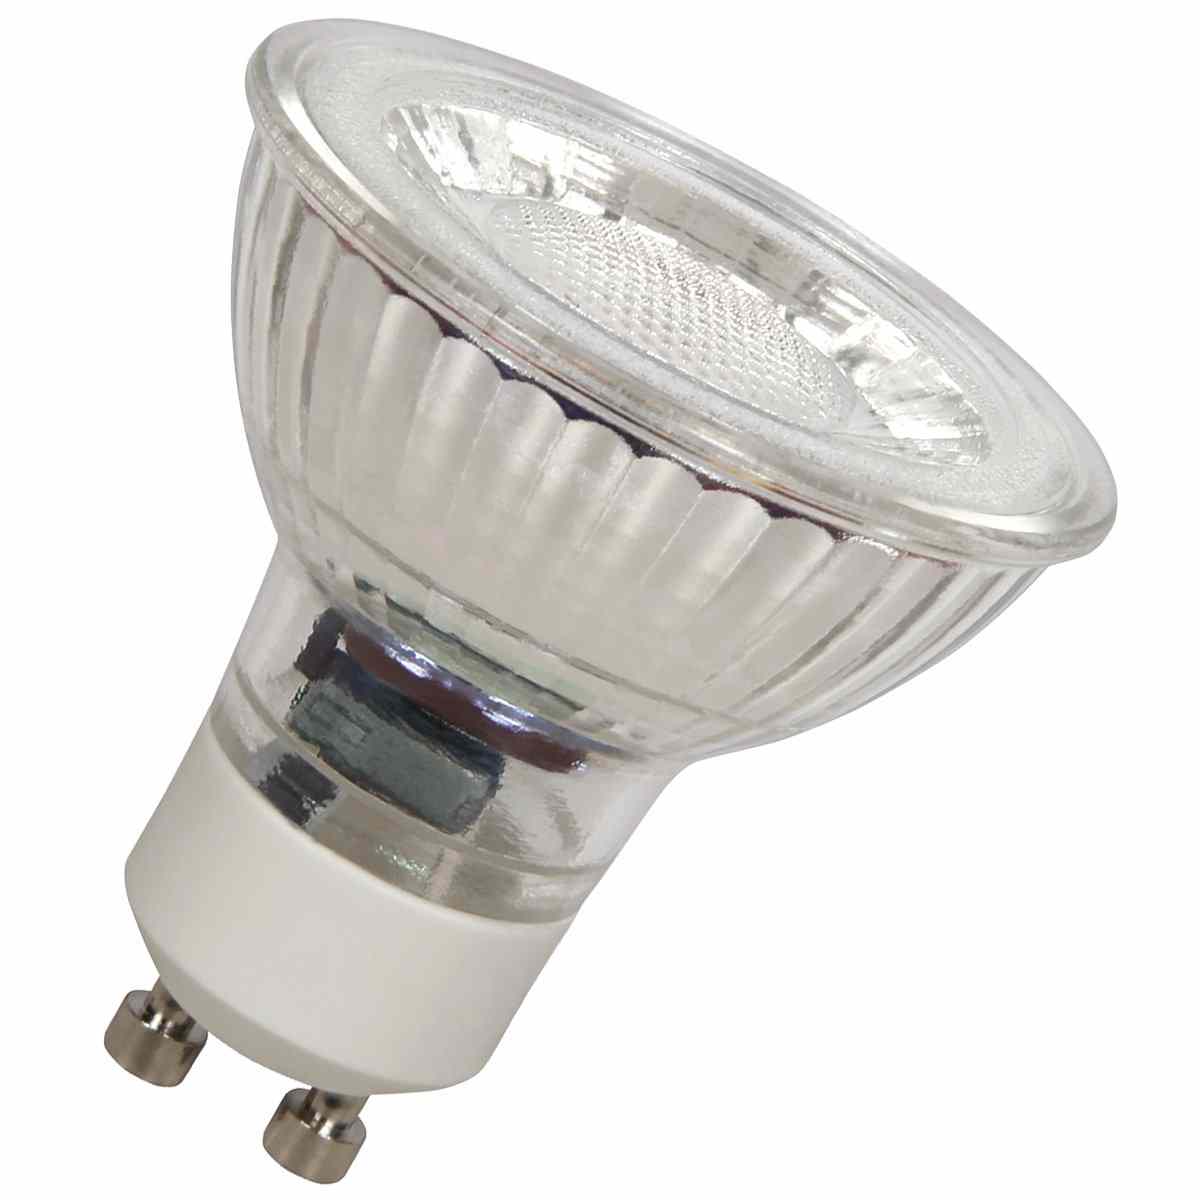 GU10 Strahler LED Lampe Licht Spot kaltweiss warmweiss 3W 5W 7W 9W LED Spot 